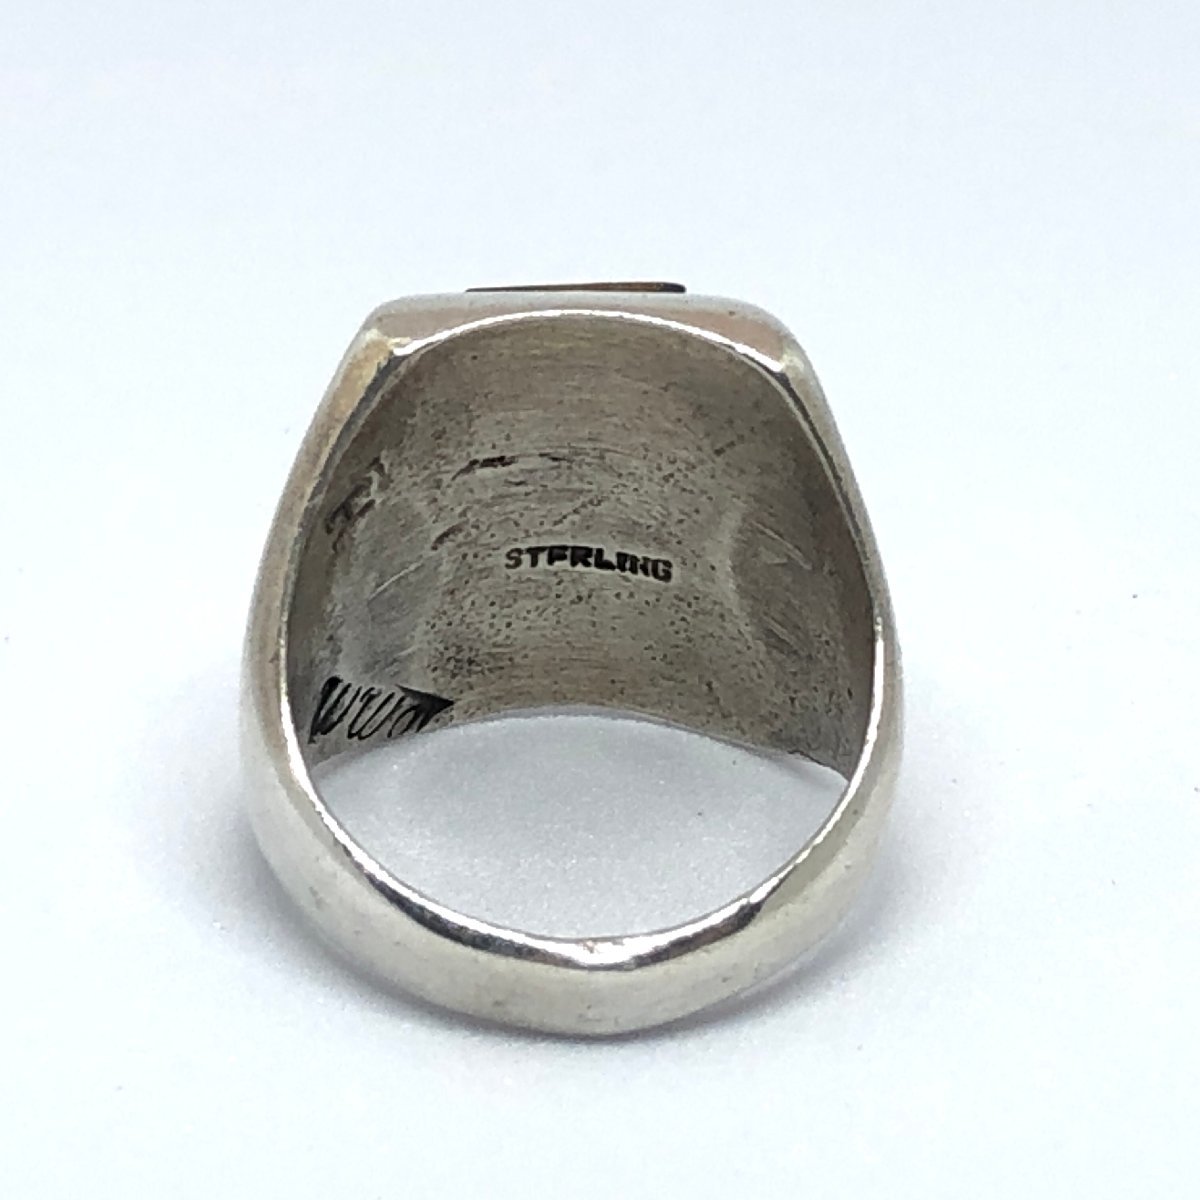  серебряное кольцо индеец ювелирные изделия кольцо серебряный аксессуары кольцо 12.5 номер 138